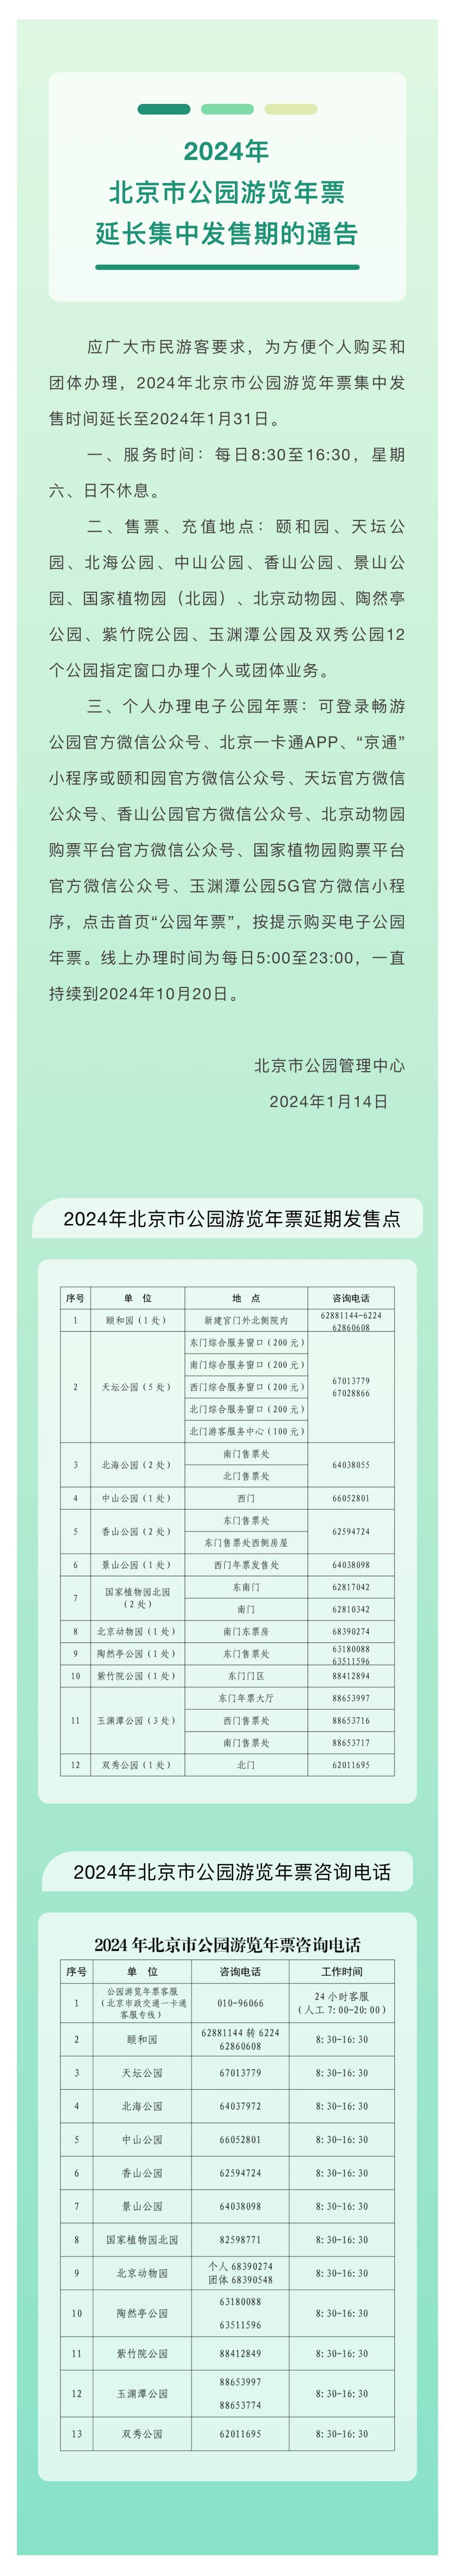 北京公园年票充值点图片